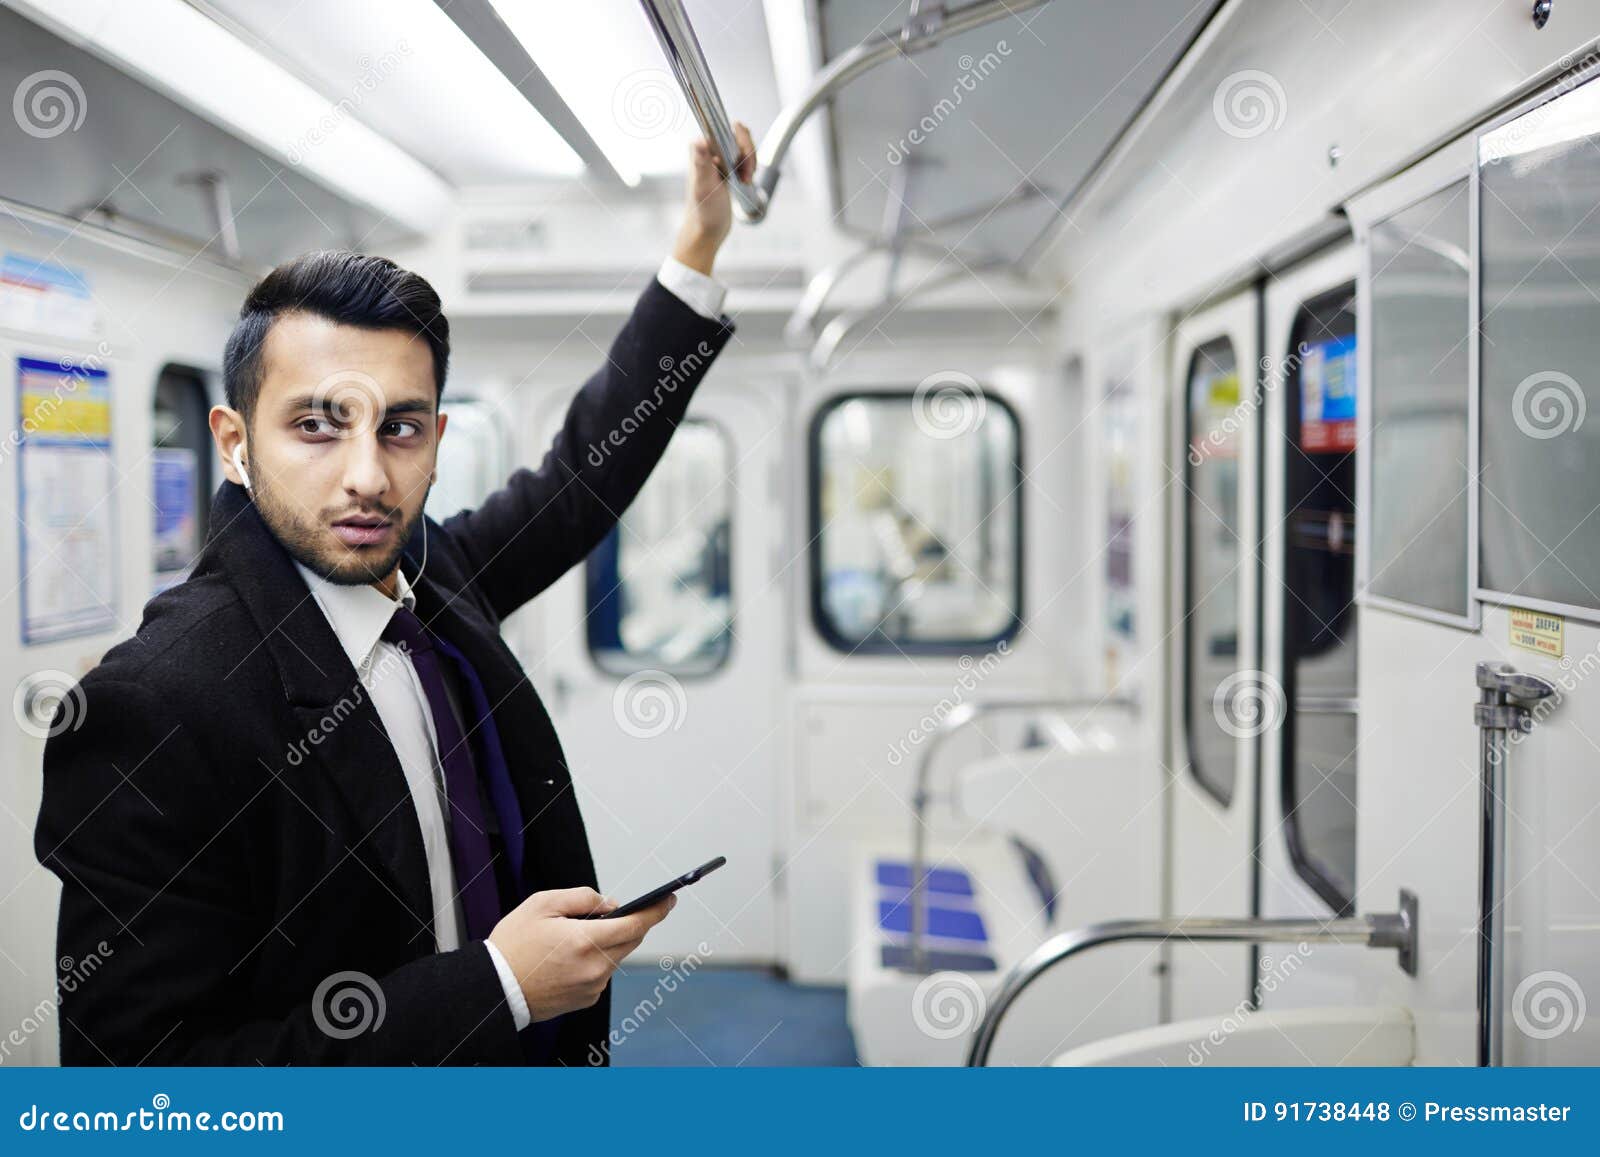 Человек держится за поручень в автобусе. Держится за поручень в метро. Человек в метро фотосток. Люди в метро стоя.